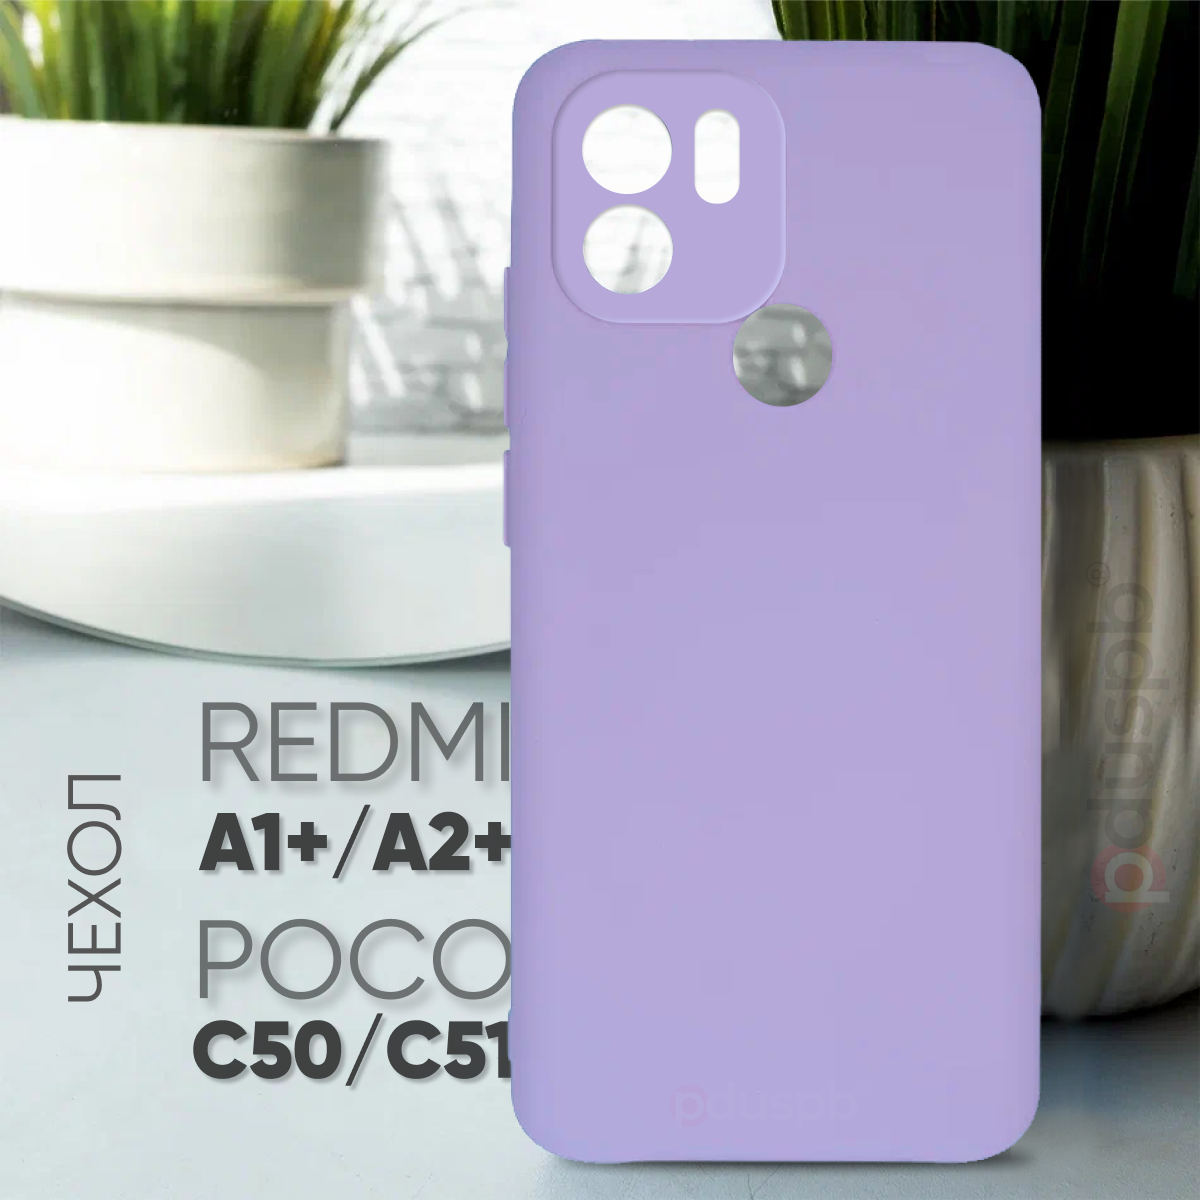 Противоударный защитный матовый чехол клип-кейс №84 Silicone Case для Xiaomi Redmi A1+ / A2+ / Poco C50 / C51 / Ксиаоми (Сяоми) Редми / Поко